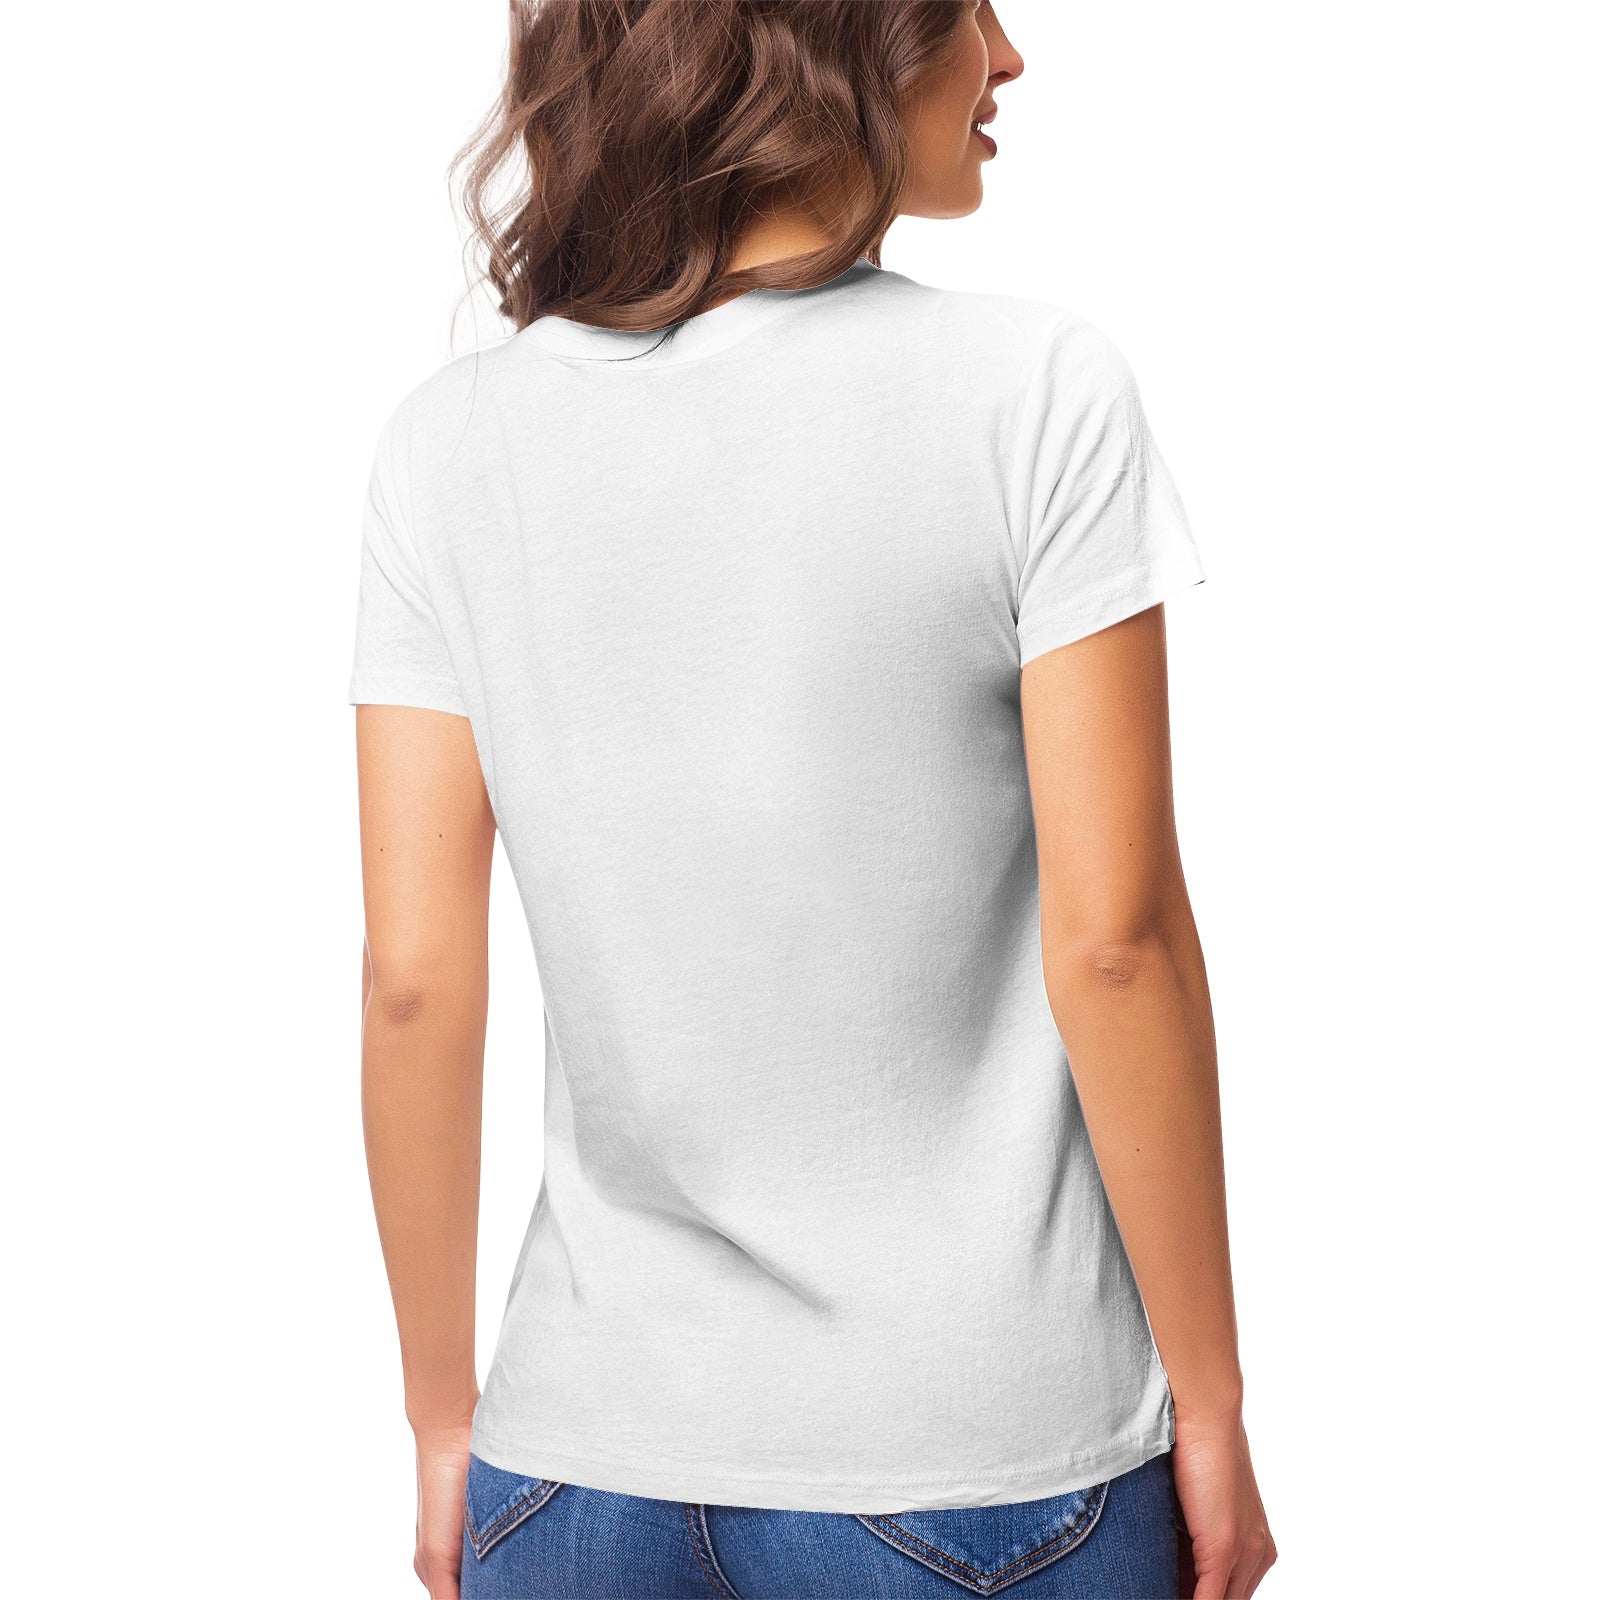 Fantasy 6 Women's Ultrasoft Pima Cotton T‑shirt - DromedarShop.com Online Boutique